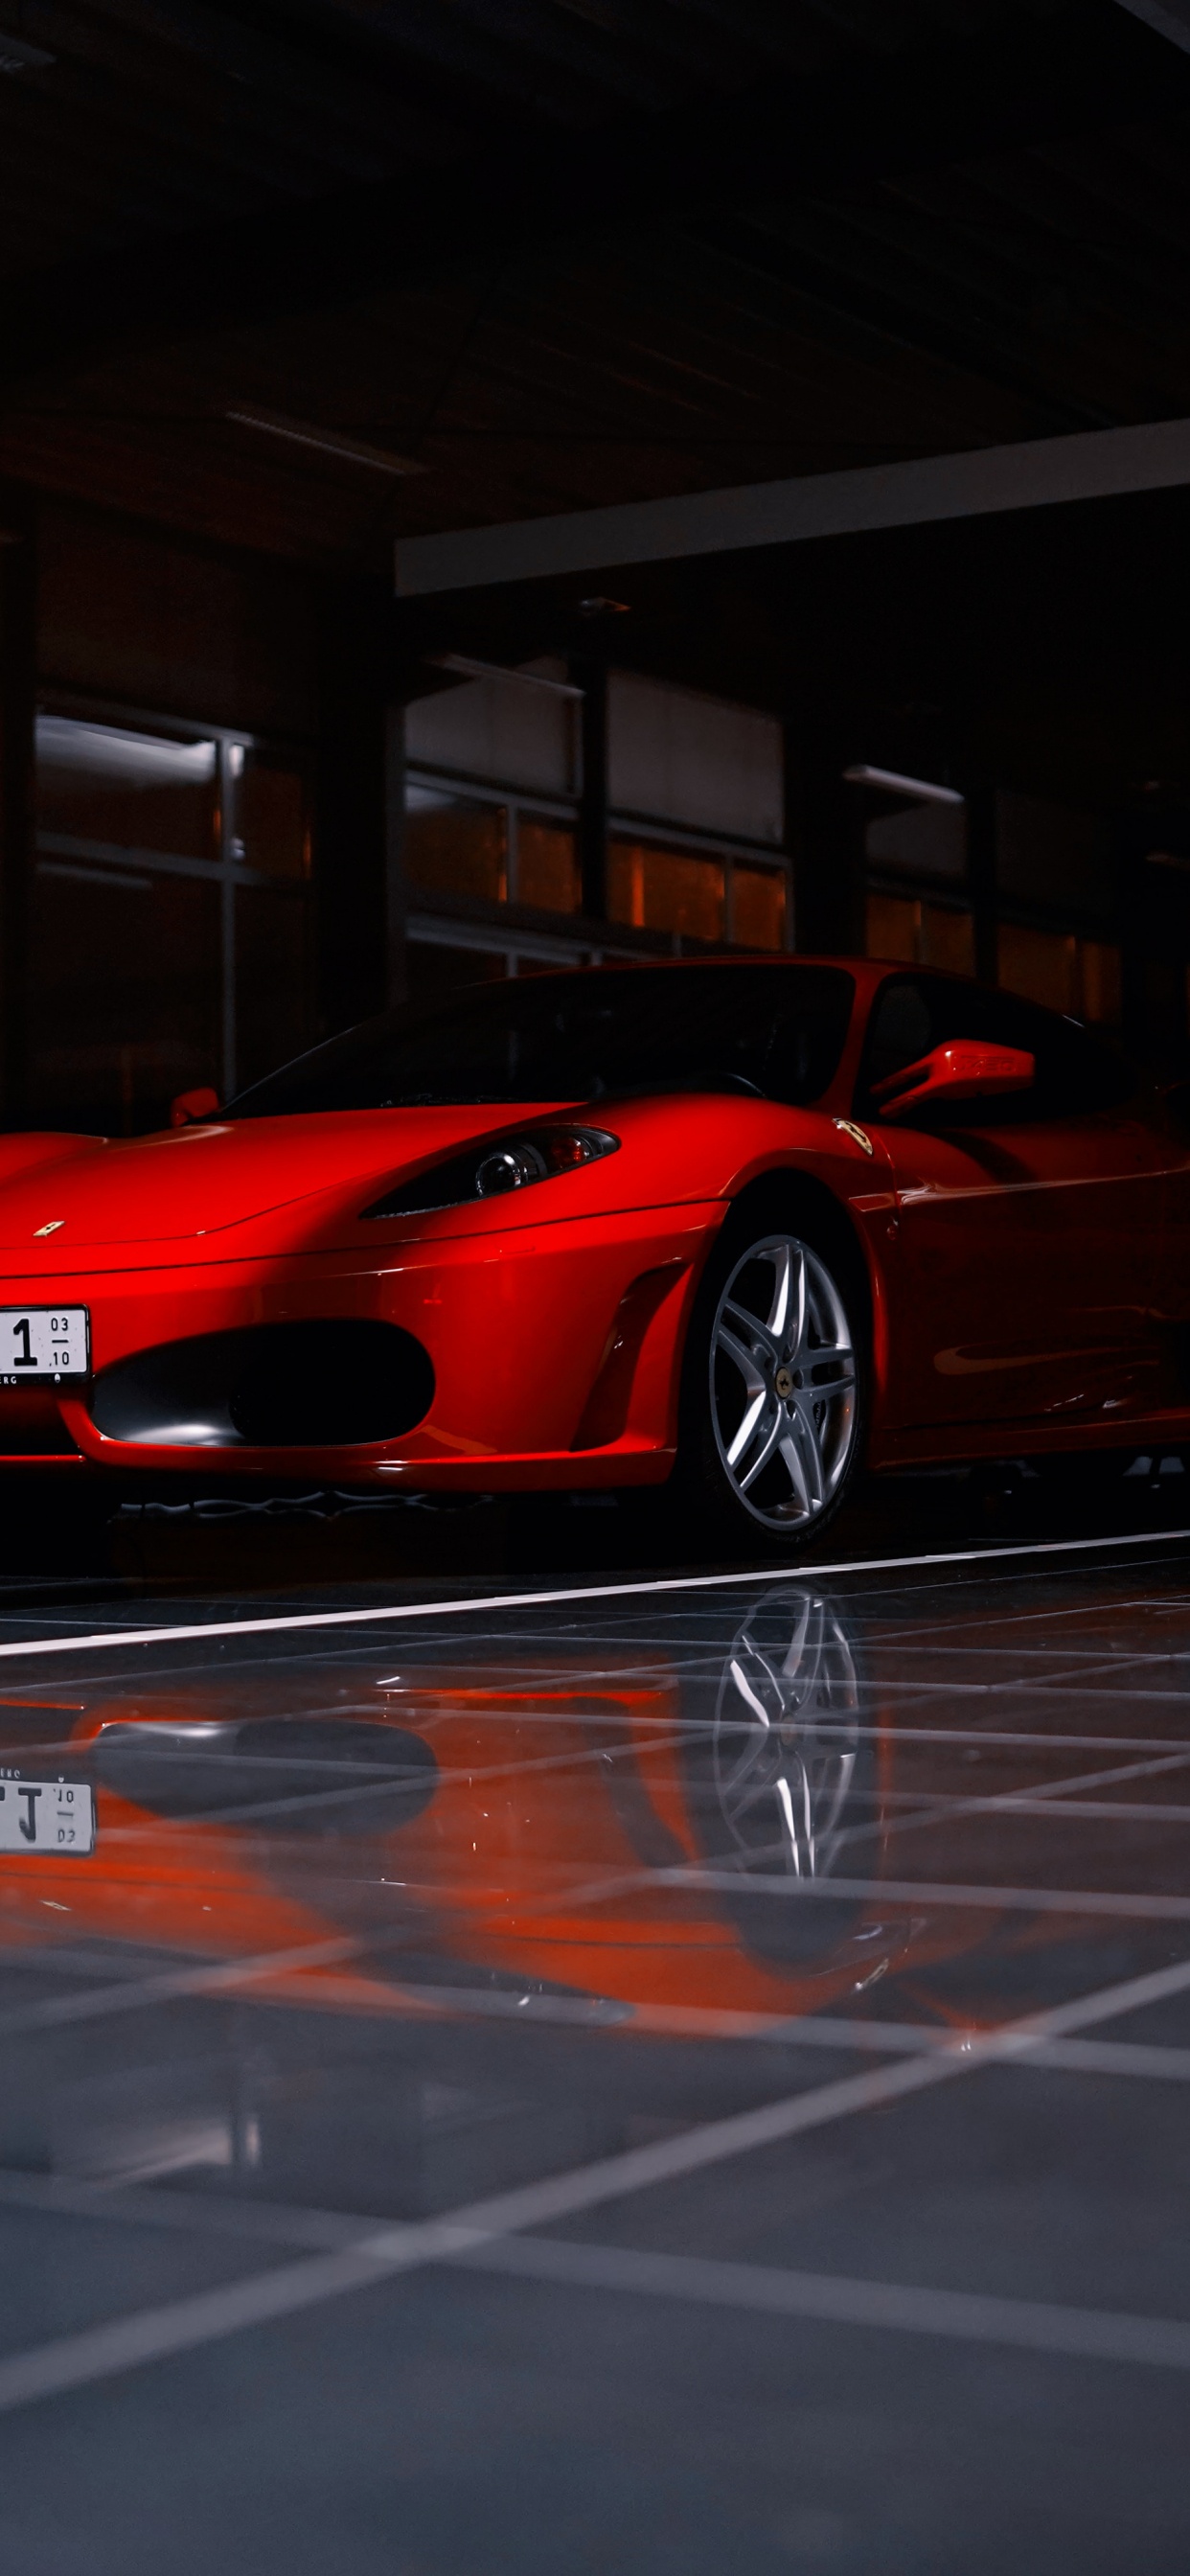 Ferrari 458 Italia Rojo Estacionado en el Estacionamiento. Wallpaper in 1242x2688 Resolution